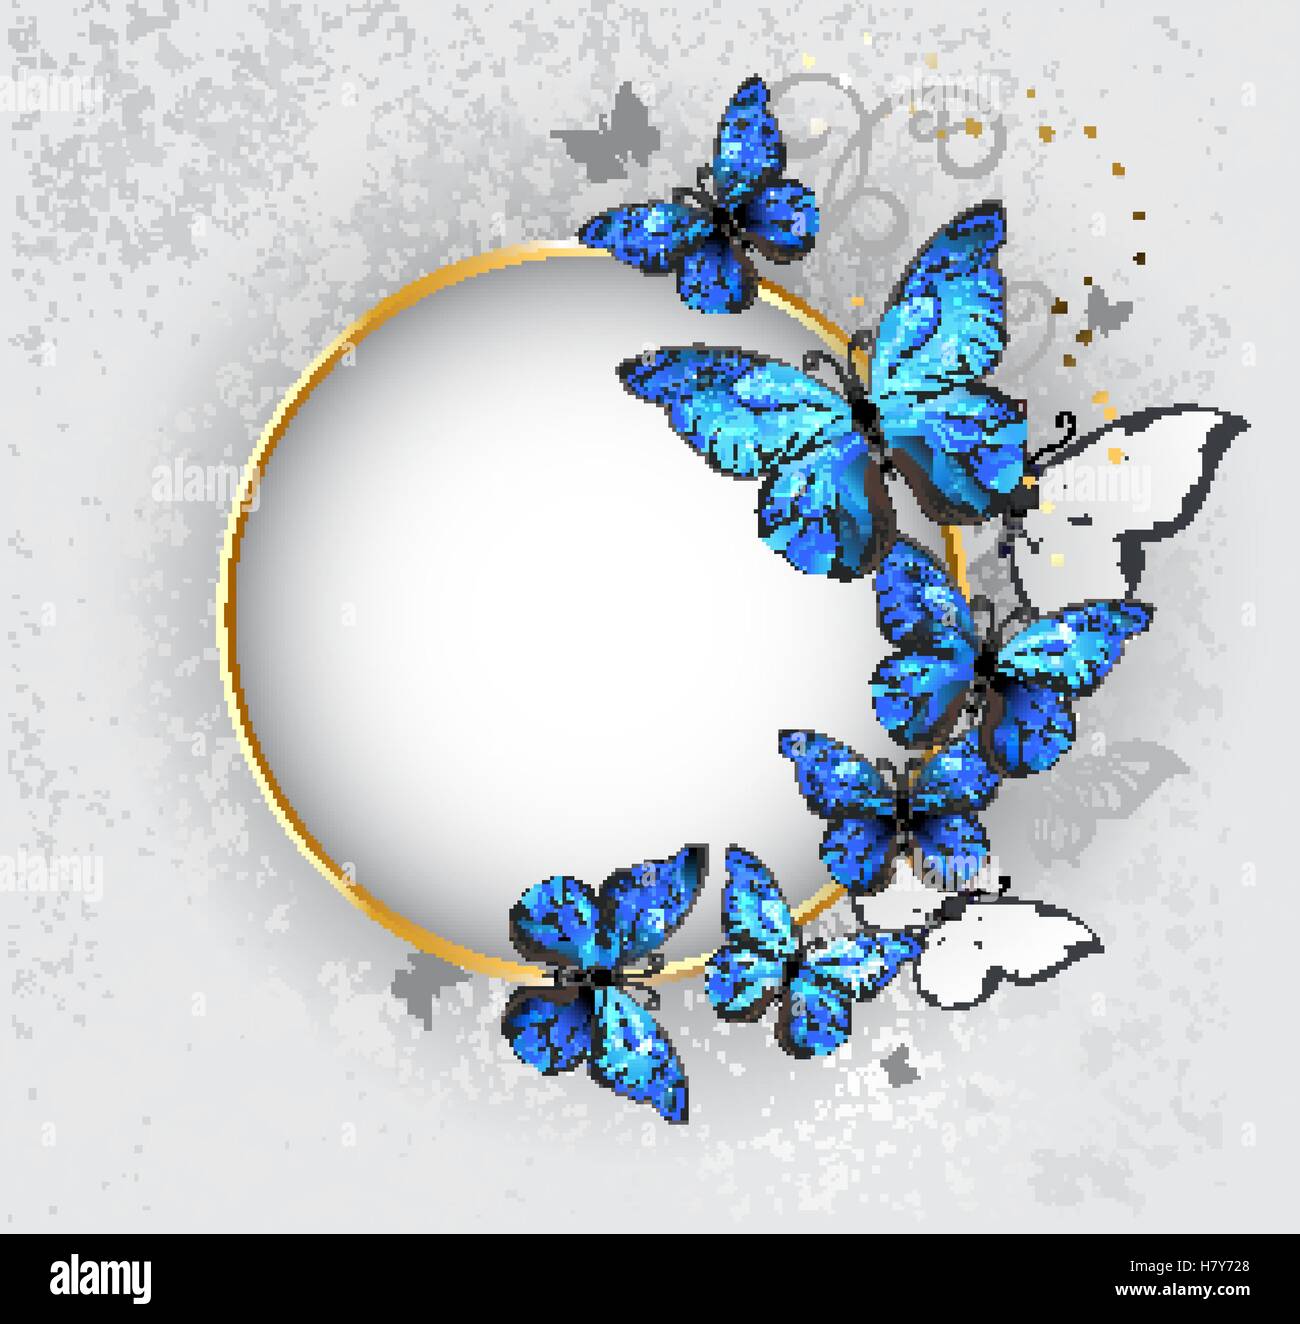 Runde gold Banner mit blauer Schmetterlinge Morpho auf grauem Hintergrund Textur. Design mit Schmetterlingen. Stock Vektor